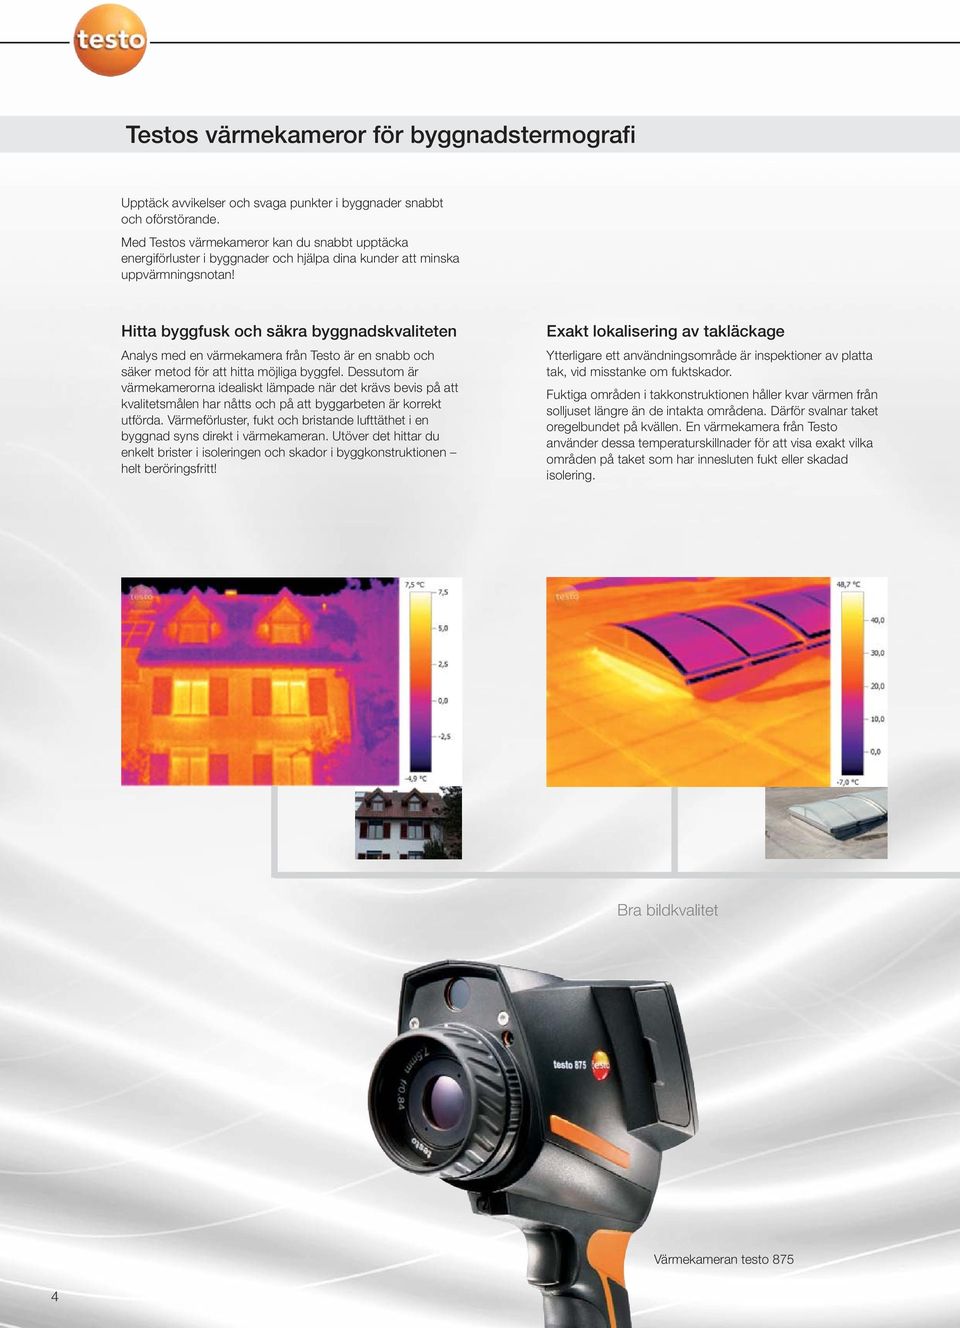 Hitta byggfusk och säkra byggnadskvaliteten Analys med en värmekamera från Testo är en snabb och säker metod för att hitta möjliga byggfel.